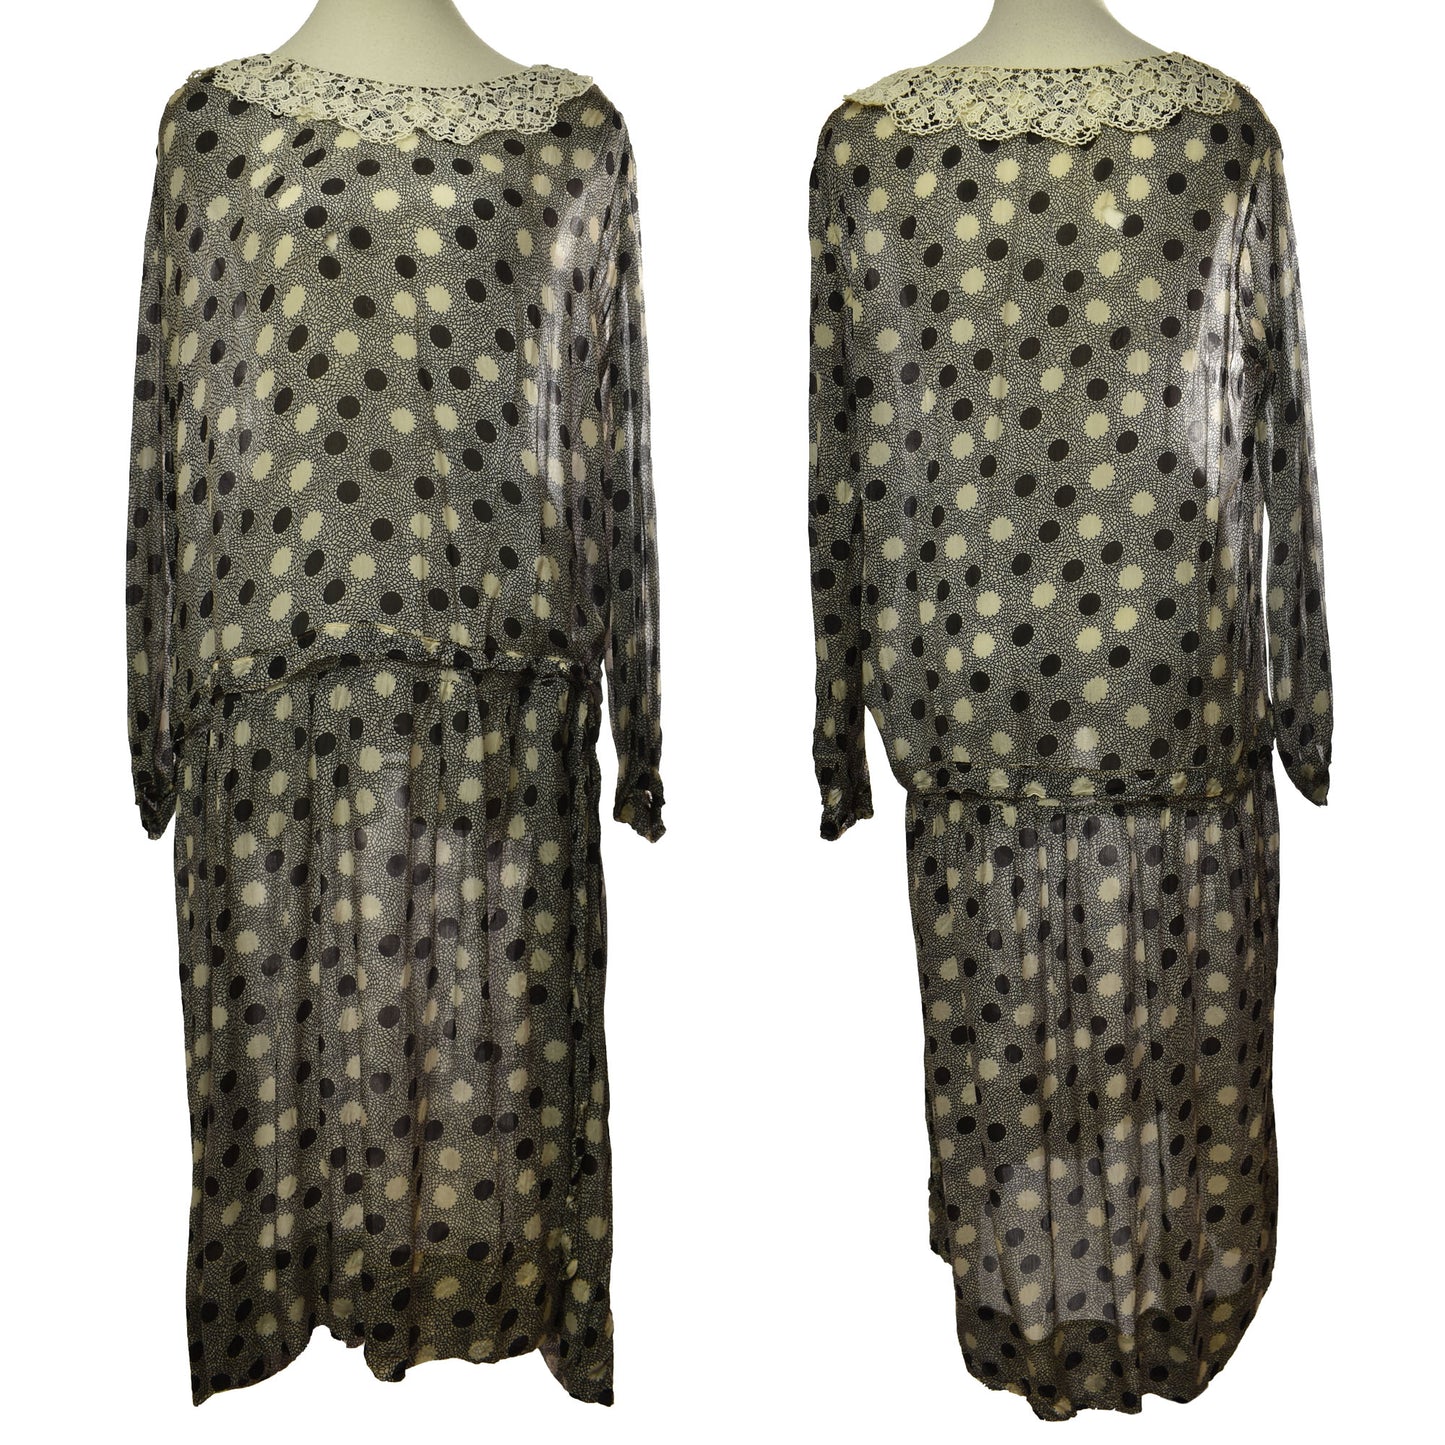 Vintage  1920's Floral & Dot Pattern Lace Neck Drop Waist Dress